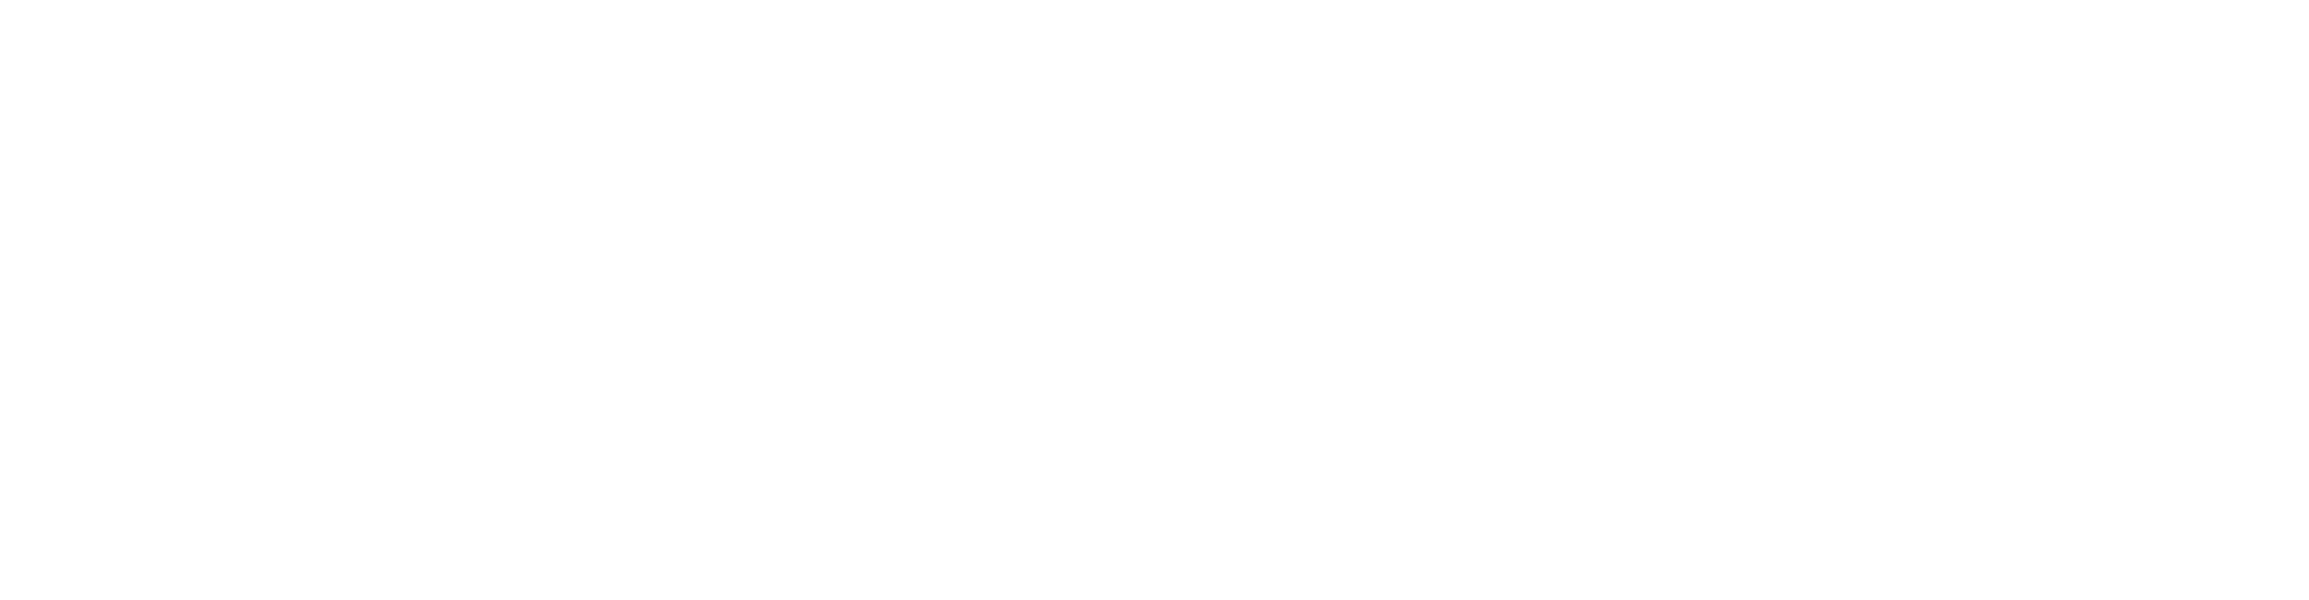 Manulife China Bank